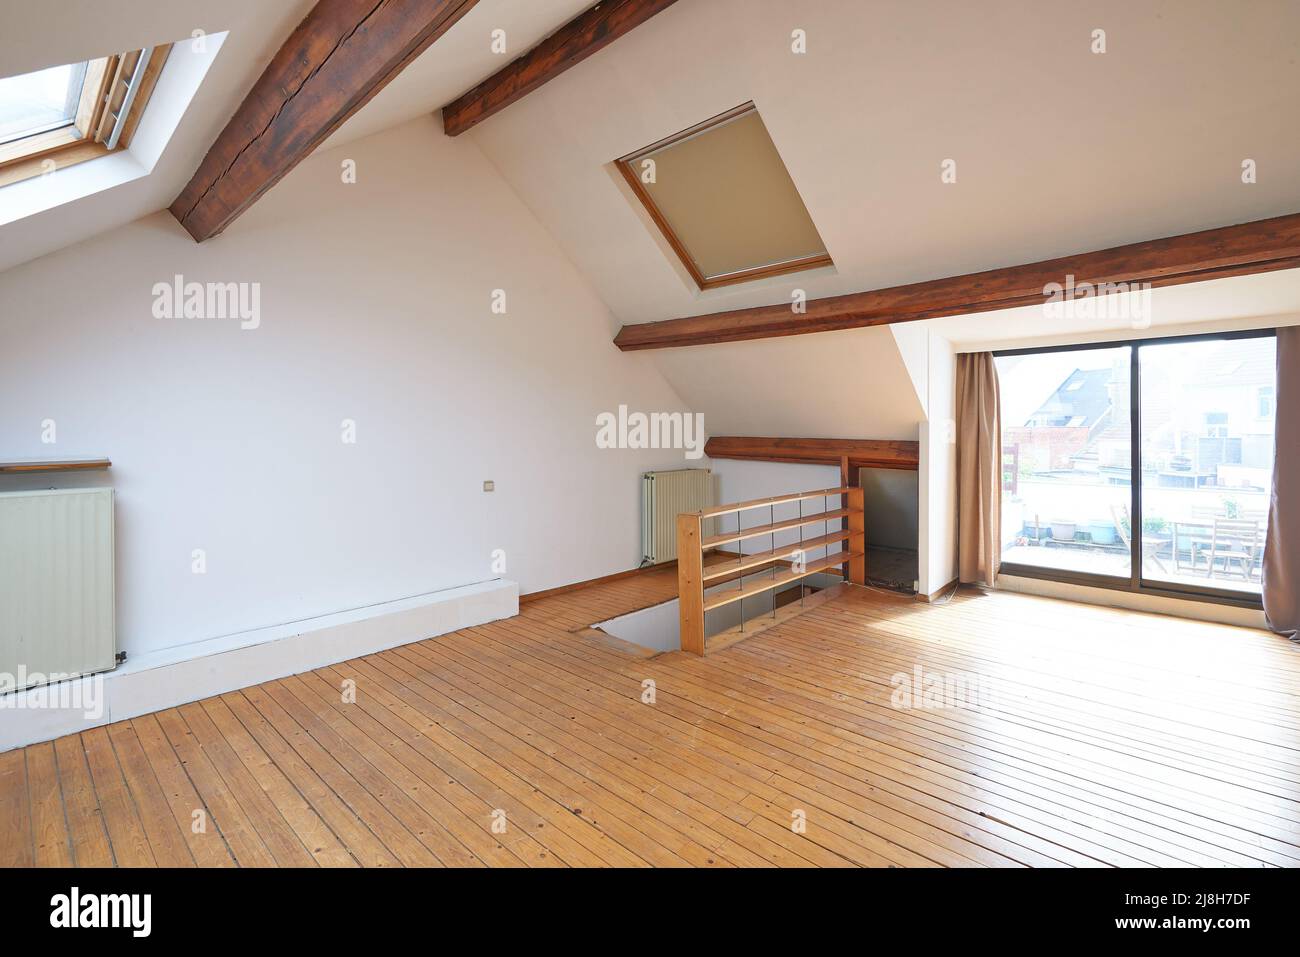 Innenfenster im Dachgeschoss und Holzboden im leeren Raum Stockfoto